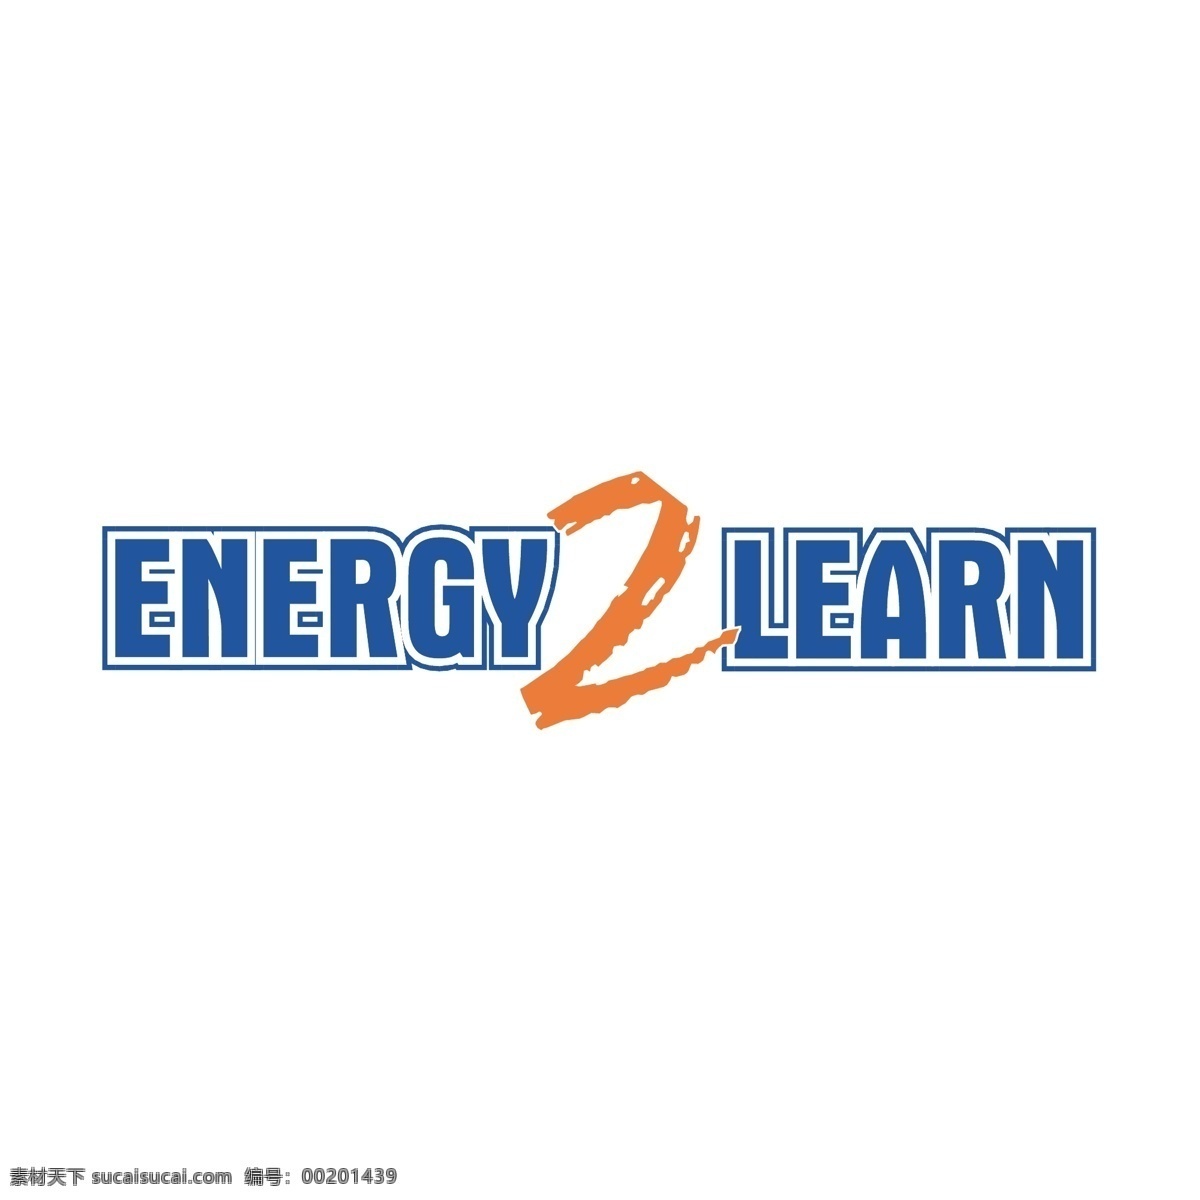 2的能源学 矢量标志下载 免费矢量标识 商标 品牌标识 标识 矢量 免费 品牌 公司 白色